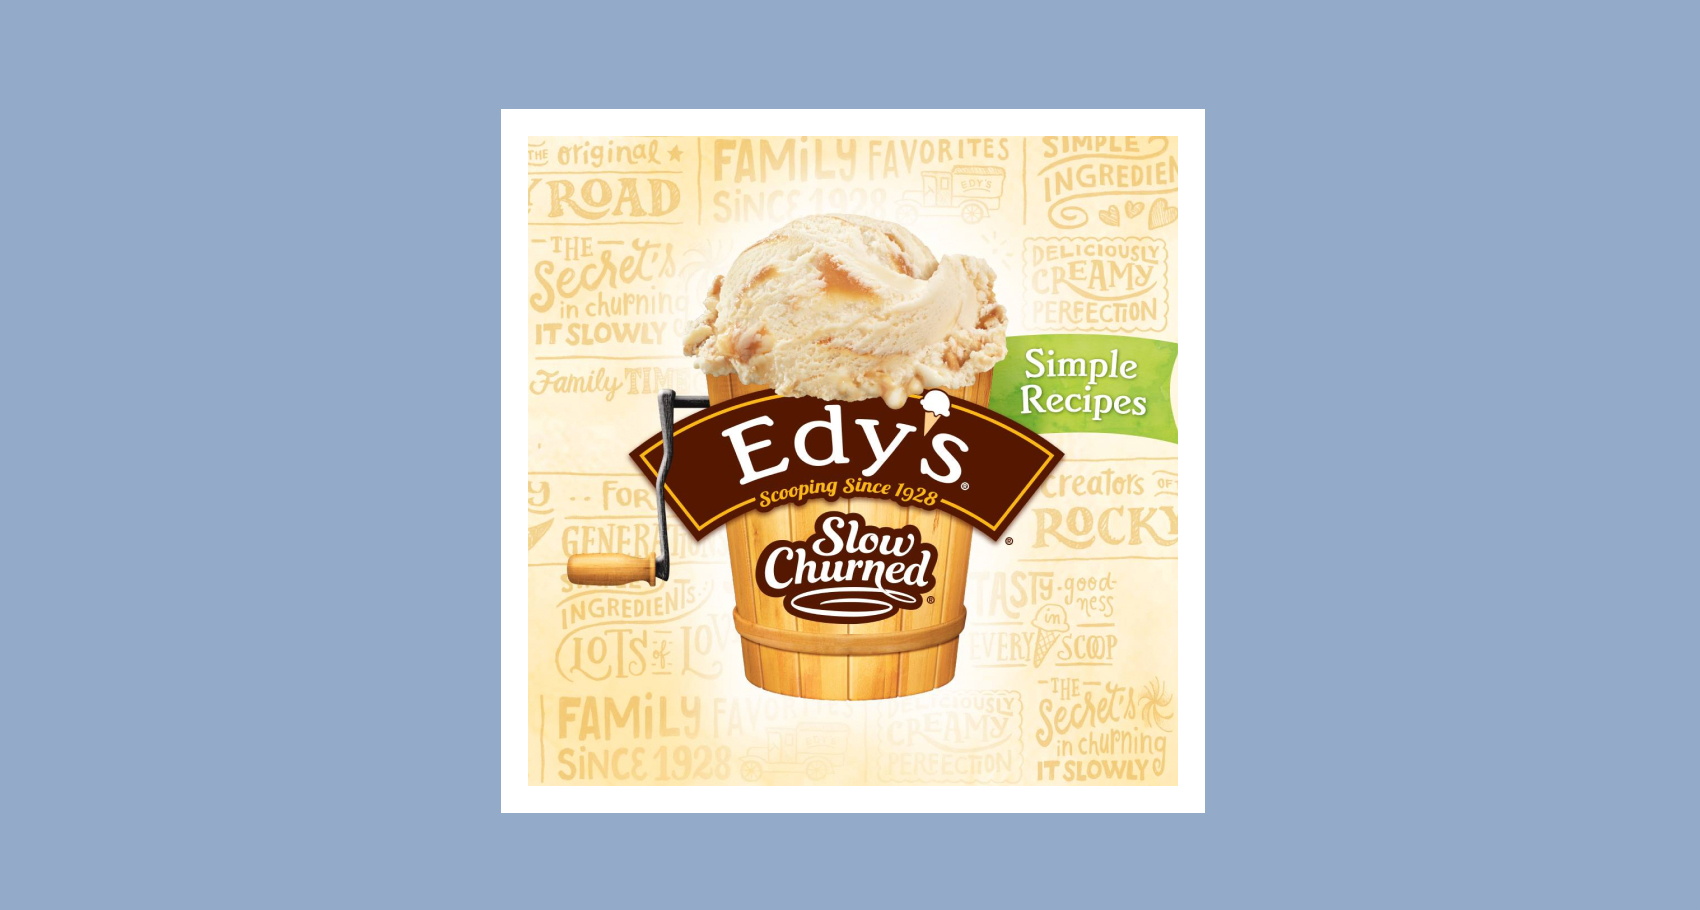 Carton of Edy's slow-churned ice cream as an ice cream churn from 2016